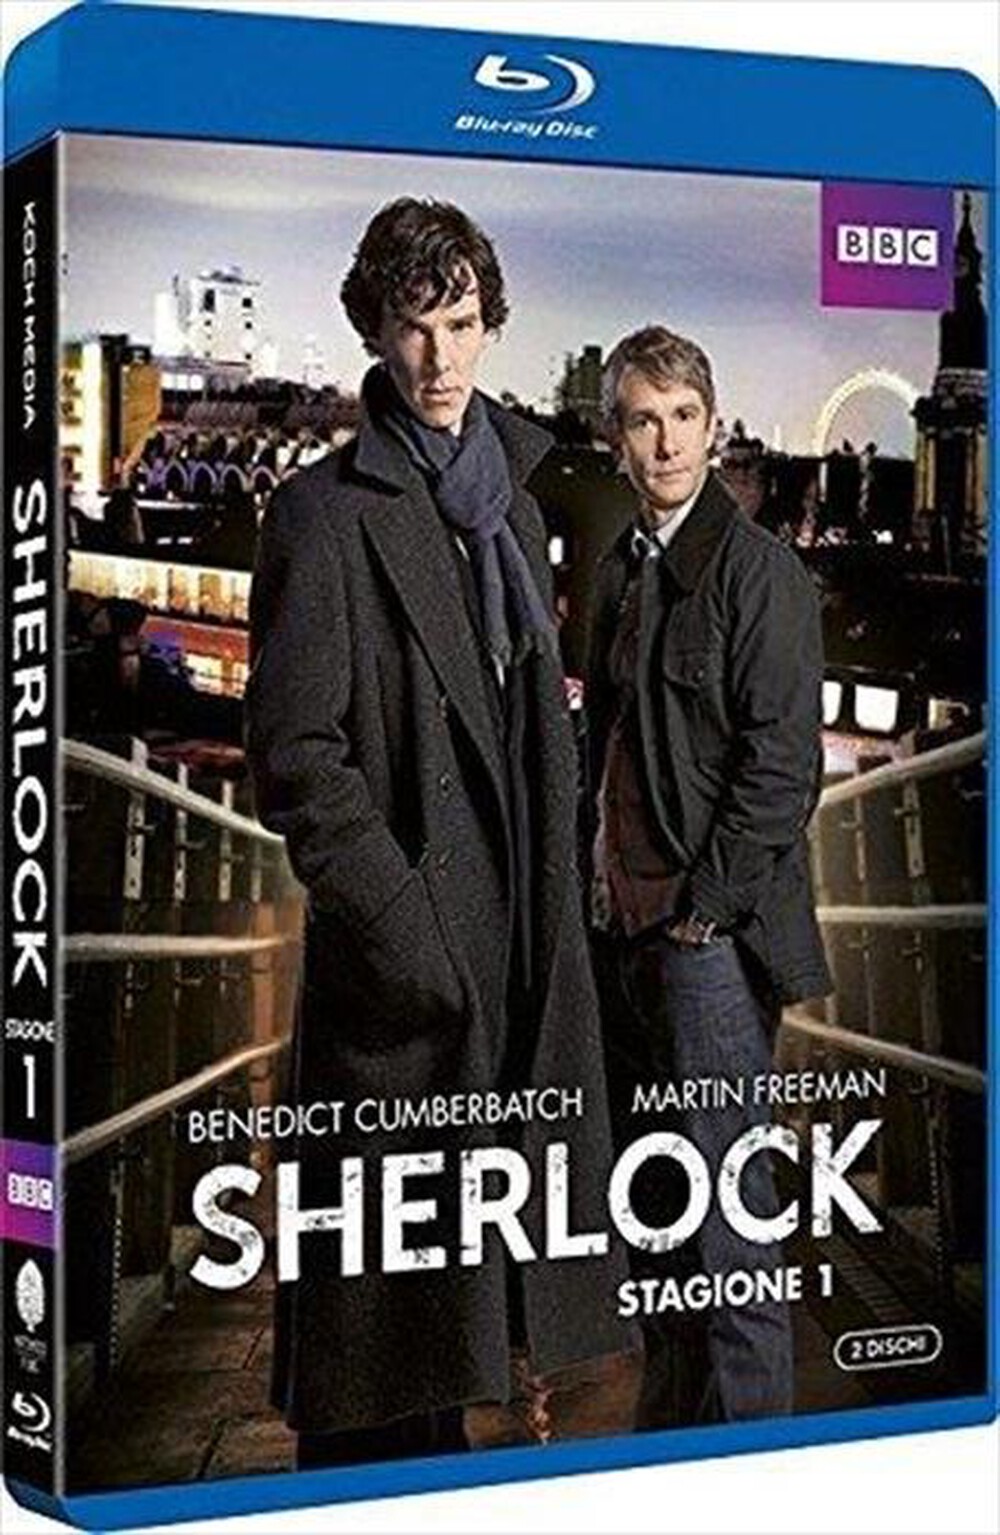 "KOCH MEDIA - Sherlock #01 (2 Blu-Ray)"